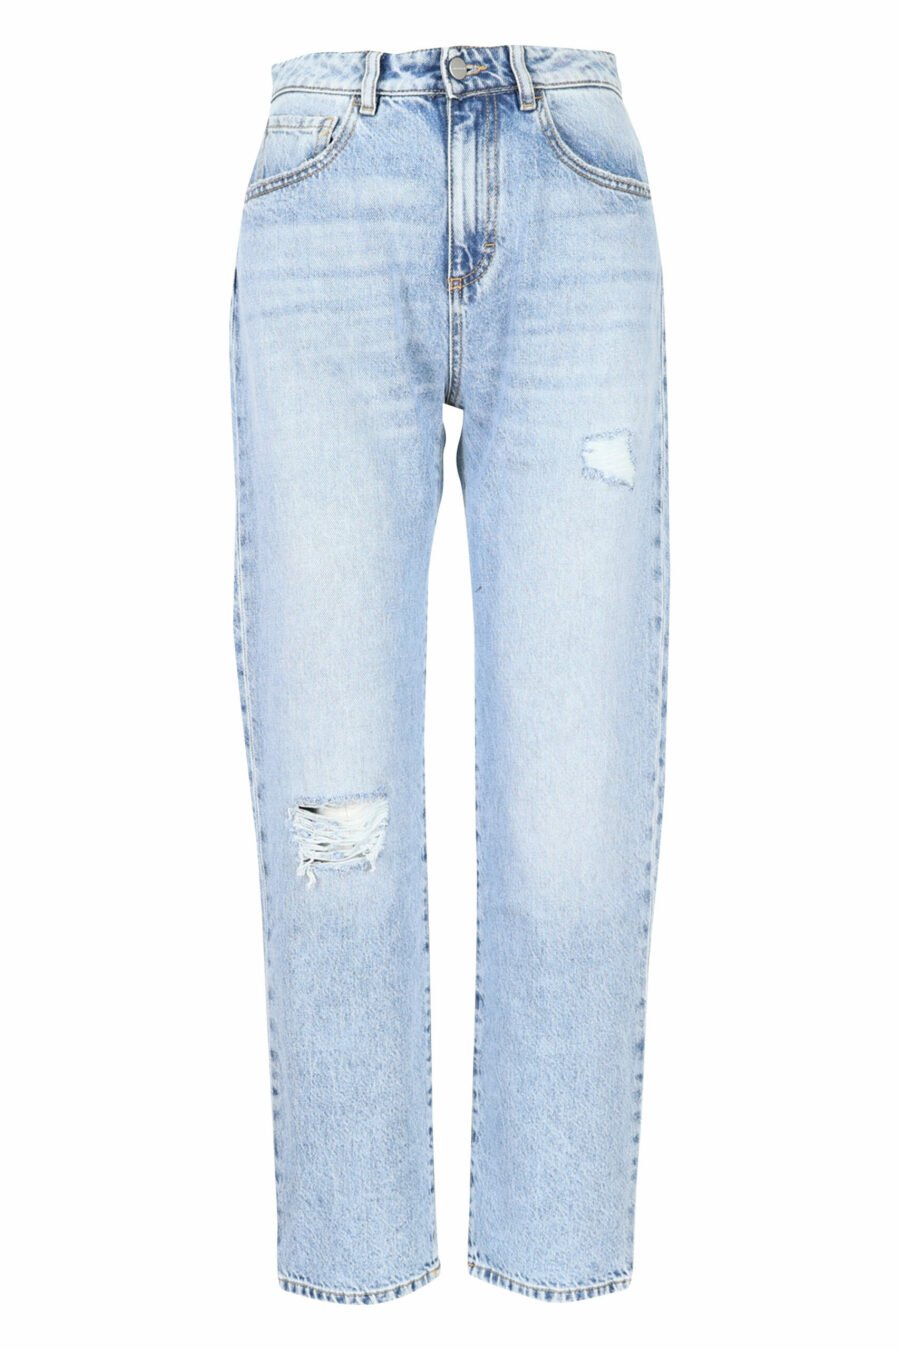 Pantalon en denim bleu "bella" avec mini-rips - 8052691165867 échelonné